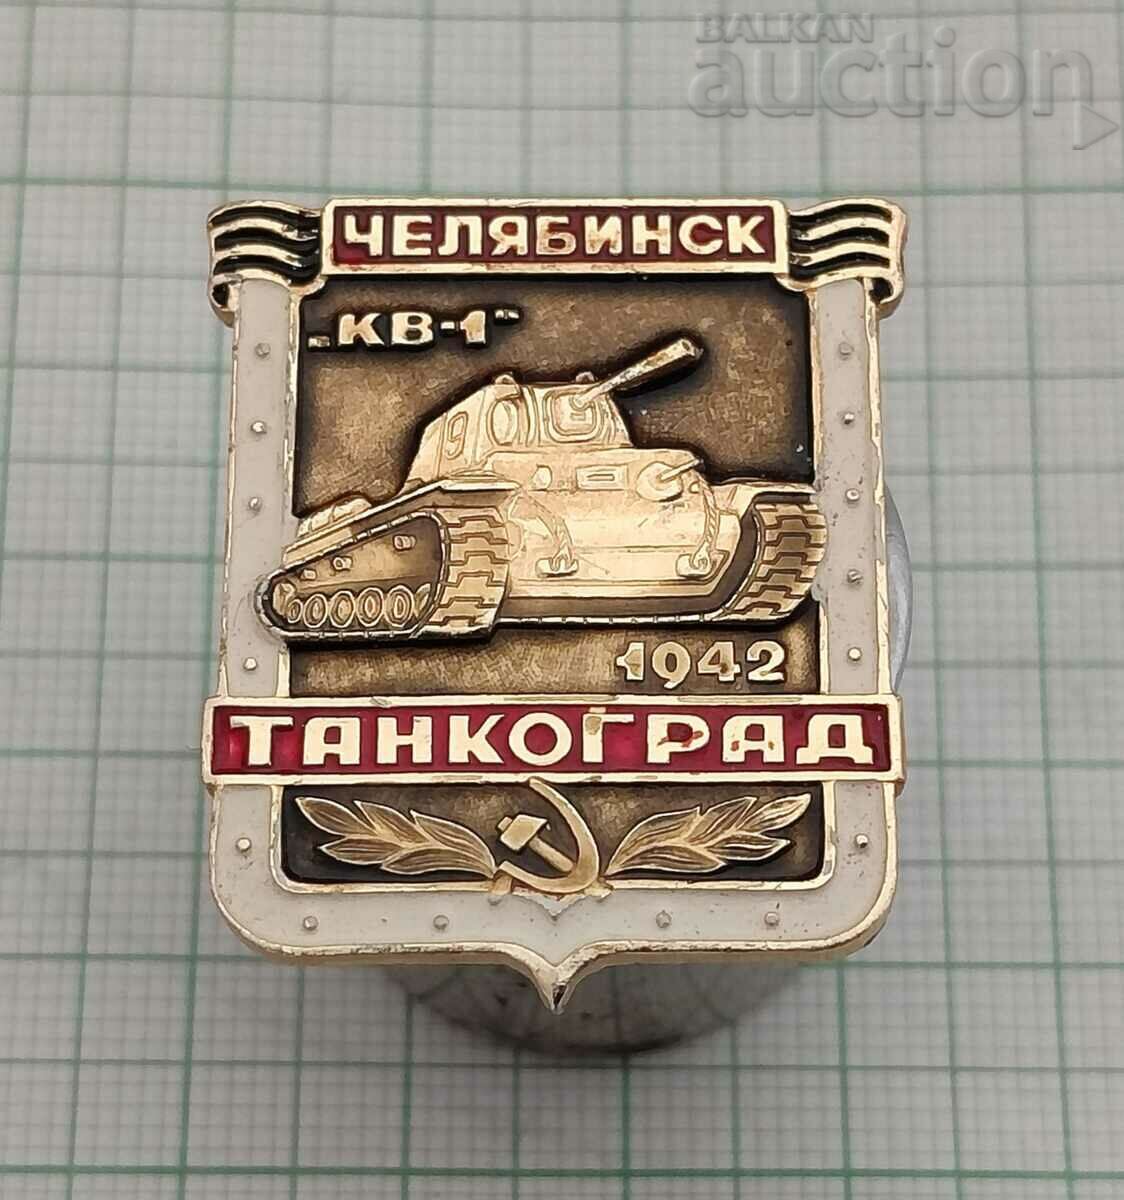 ТАНК Т-34 КВ-1 ЧЕЛЯБИНСК 1942 г. ЗНАЧКА